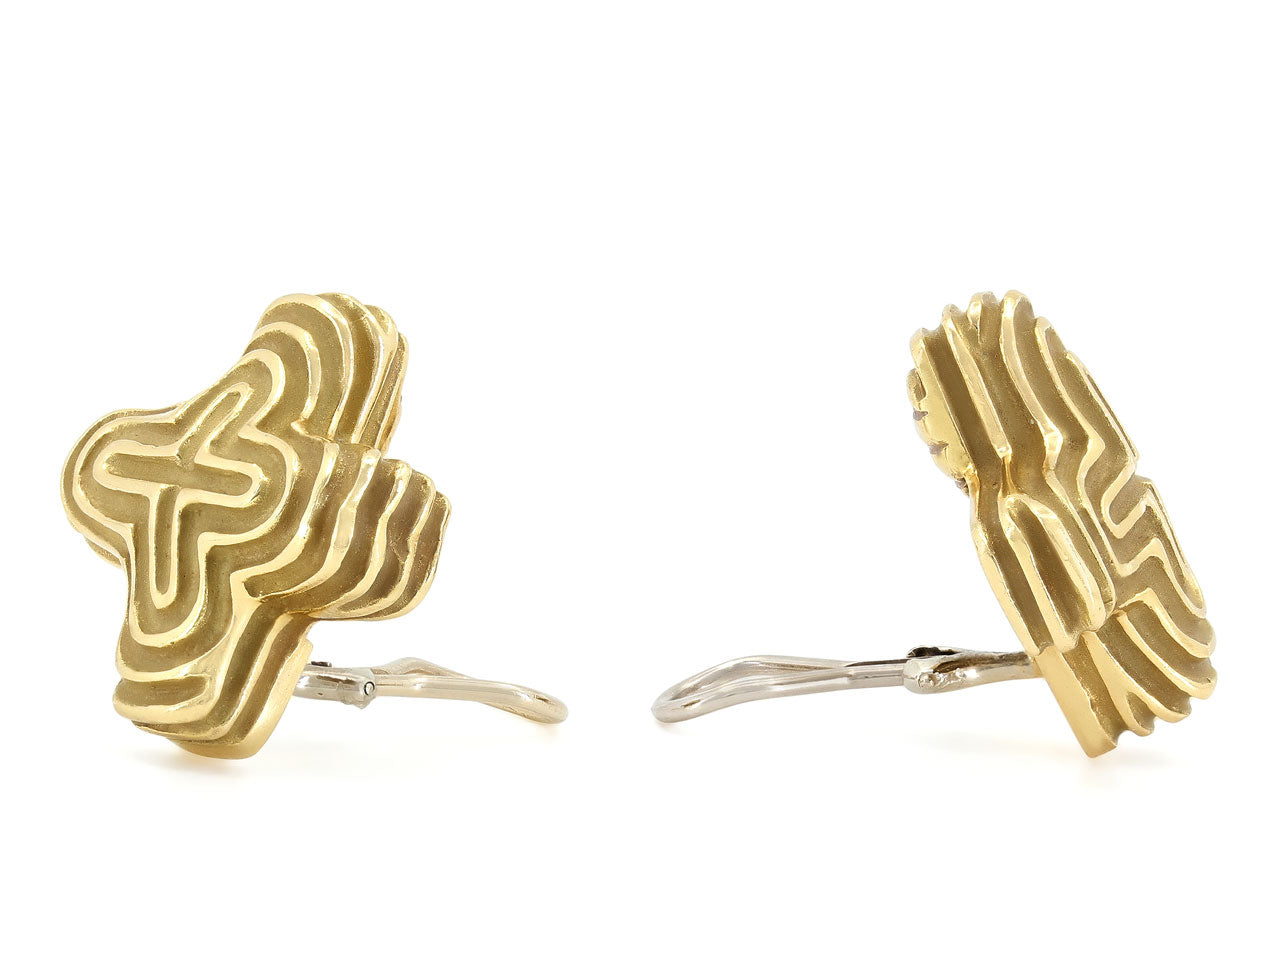 Christopher Walling 'X' Earrings in 18K Gold